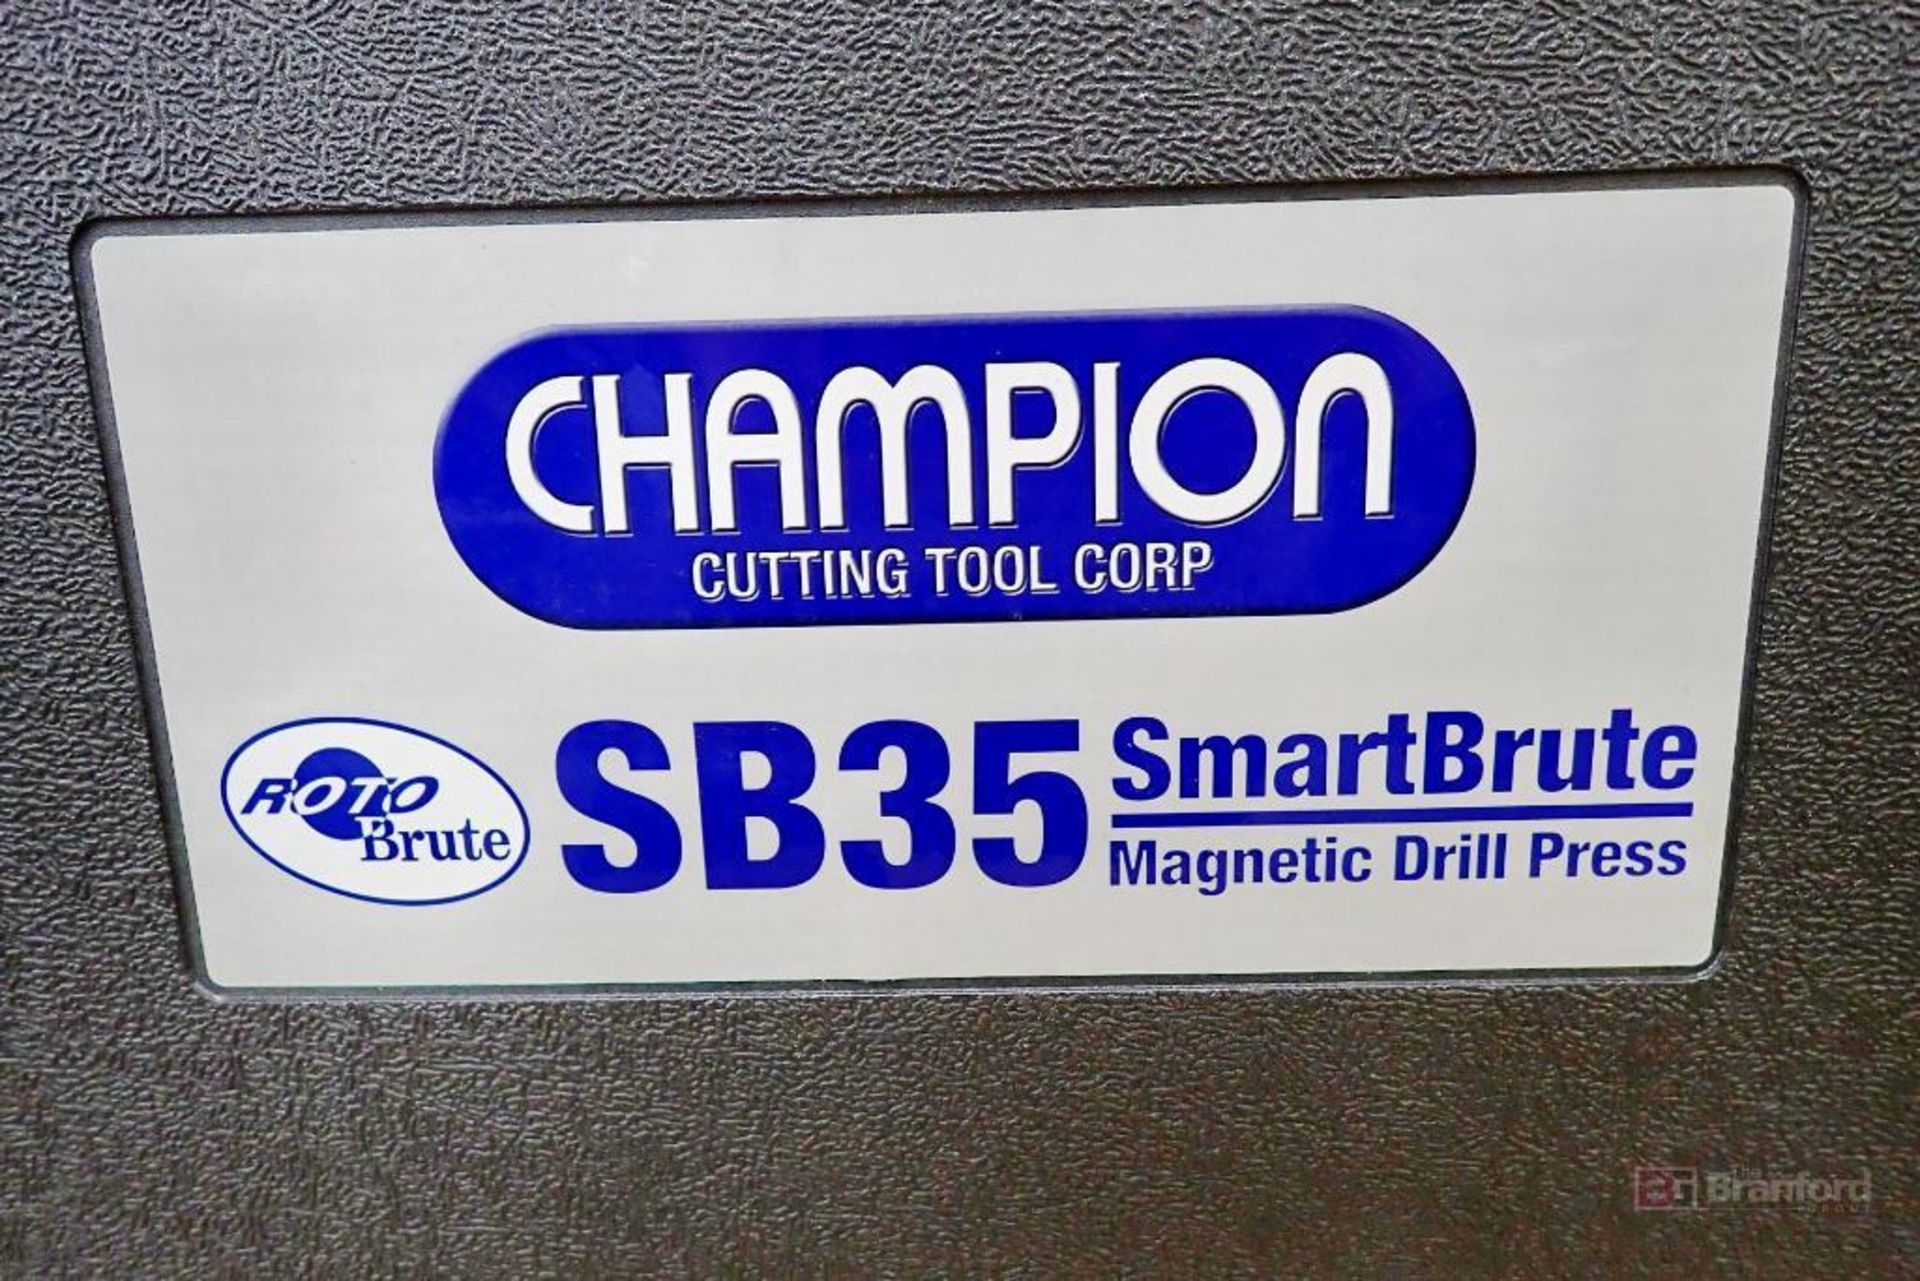 Champion Roto Brute SB35 SmartBrute Magnetic Drill Press - Image 2 of 8